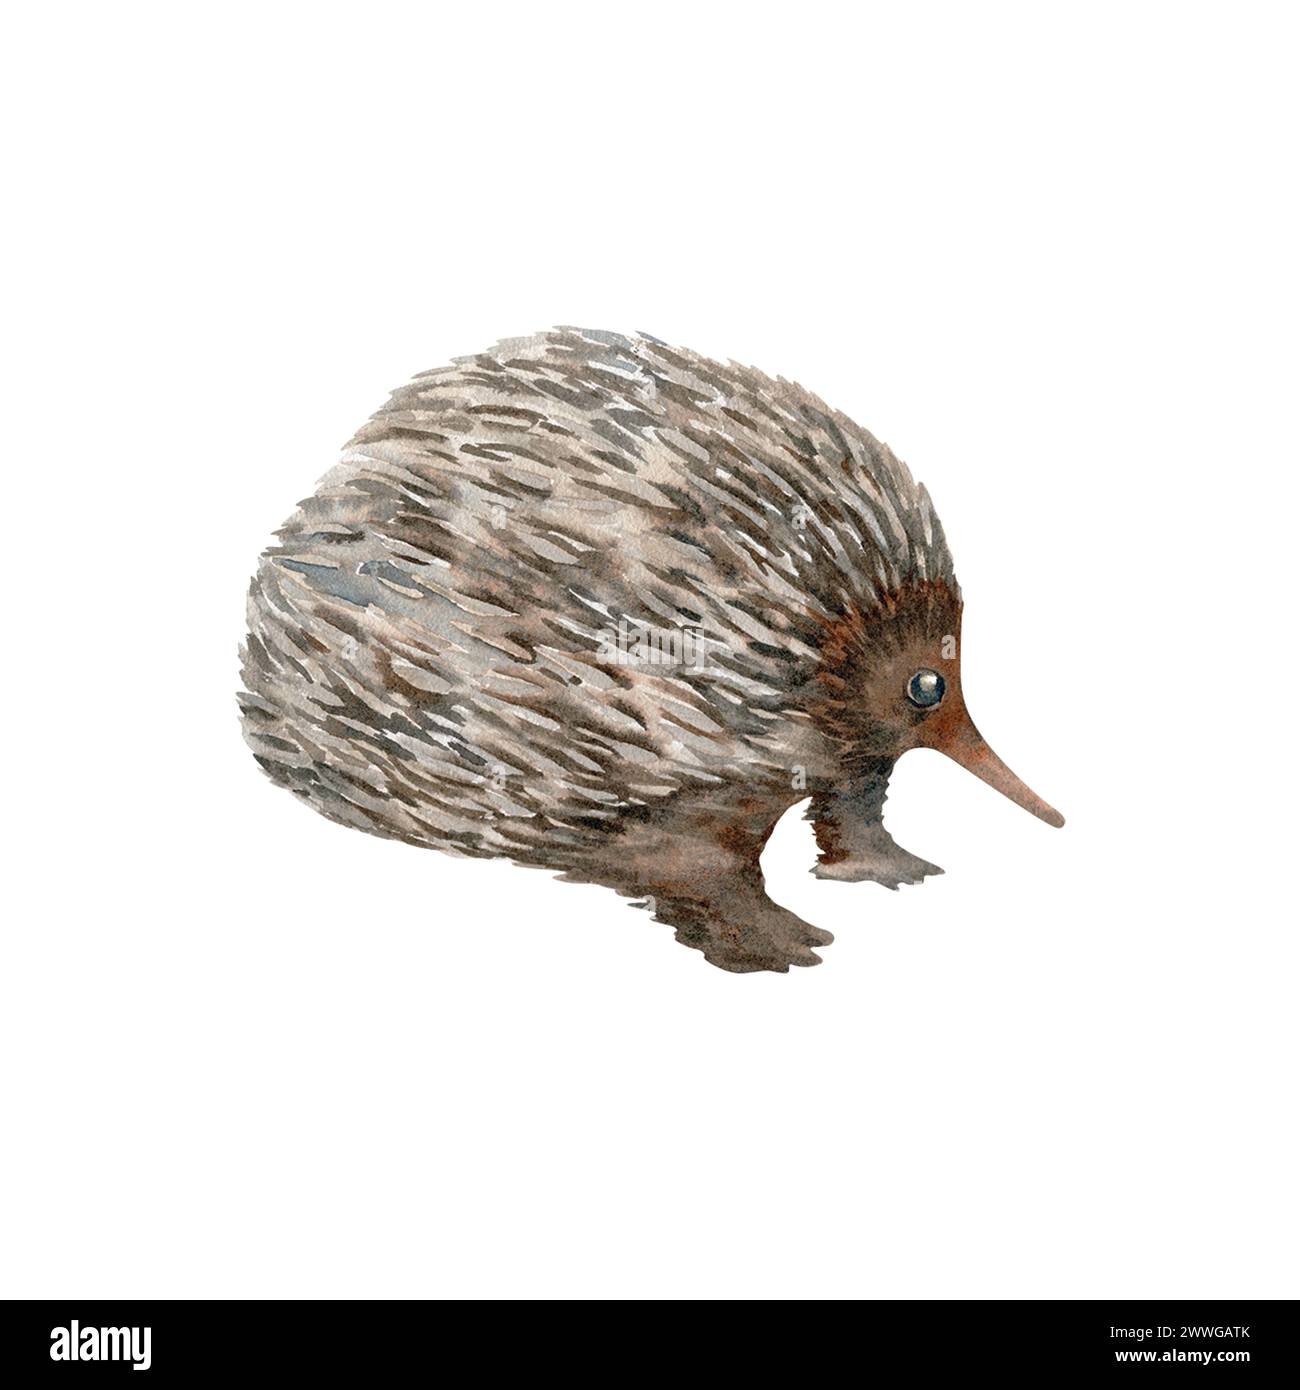 Echidna. Croquis d'animaux nocturnes marsupiaux indigènes australiens. Illustration aquarelle isolée sur fond blanc. Elément dessiné à la main Banque D'Images